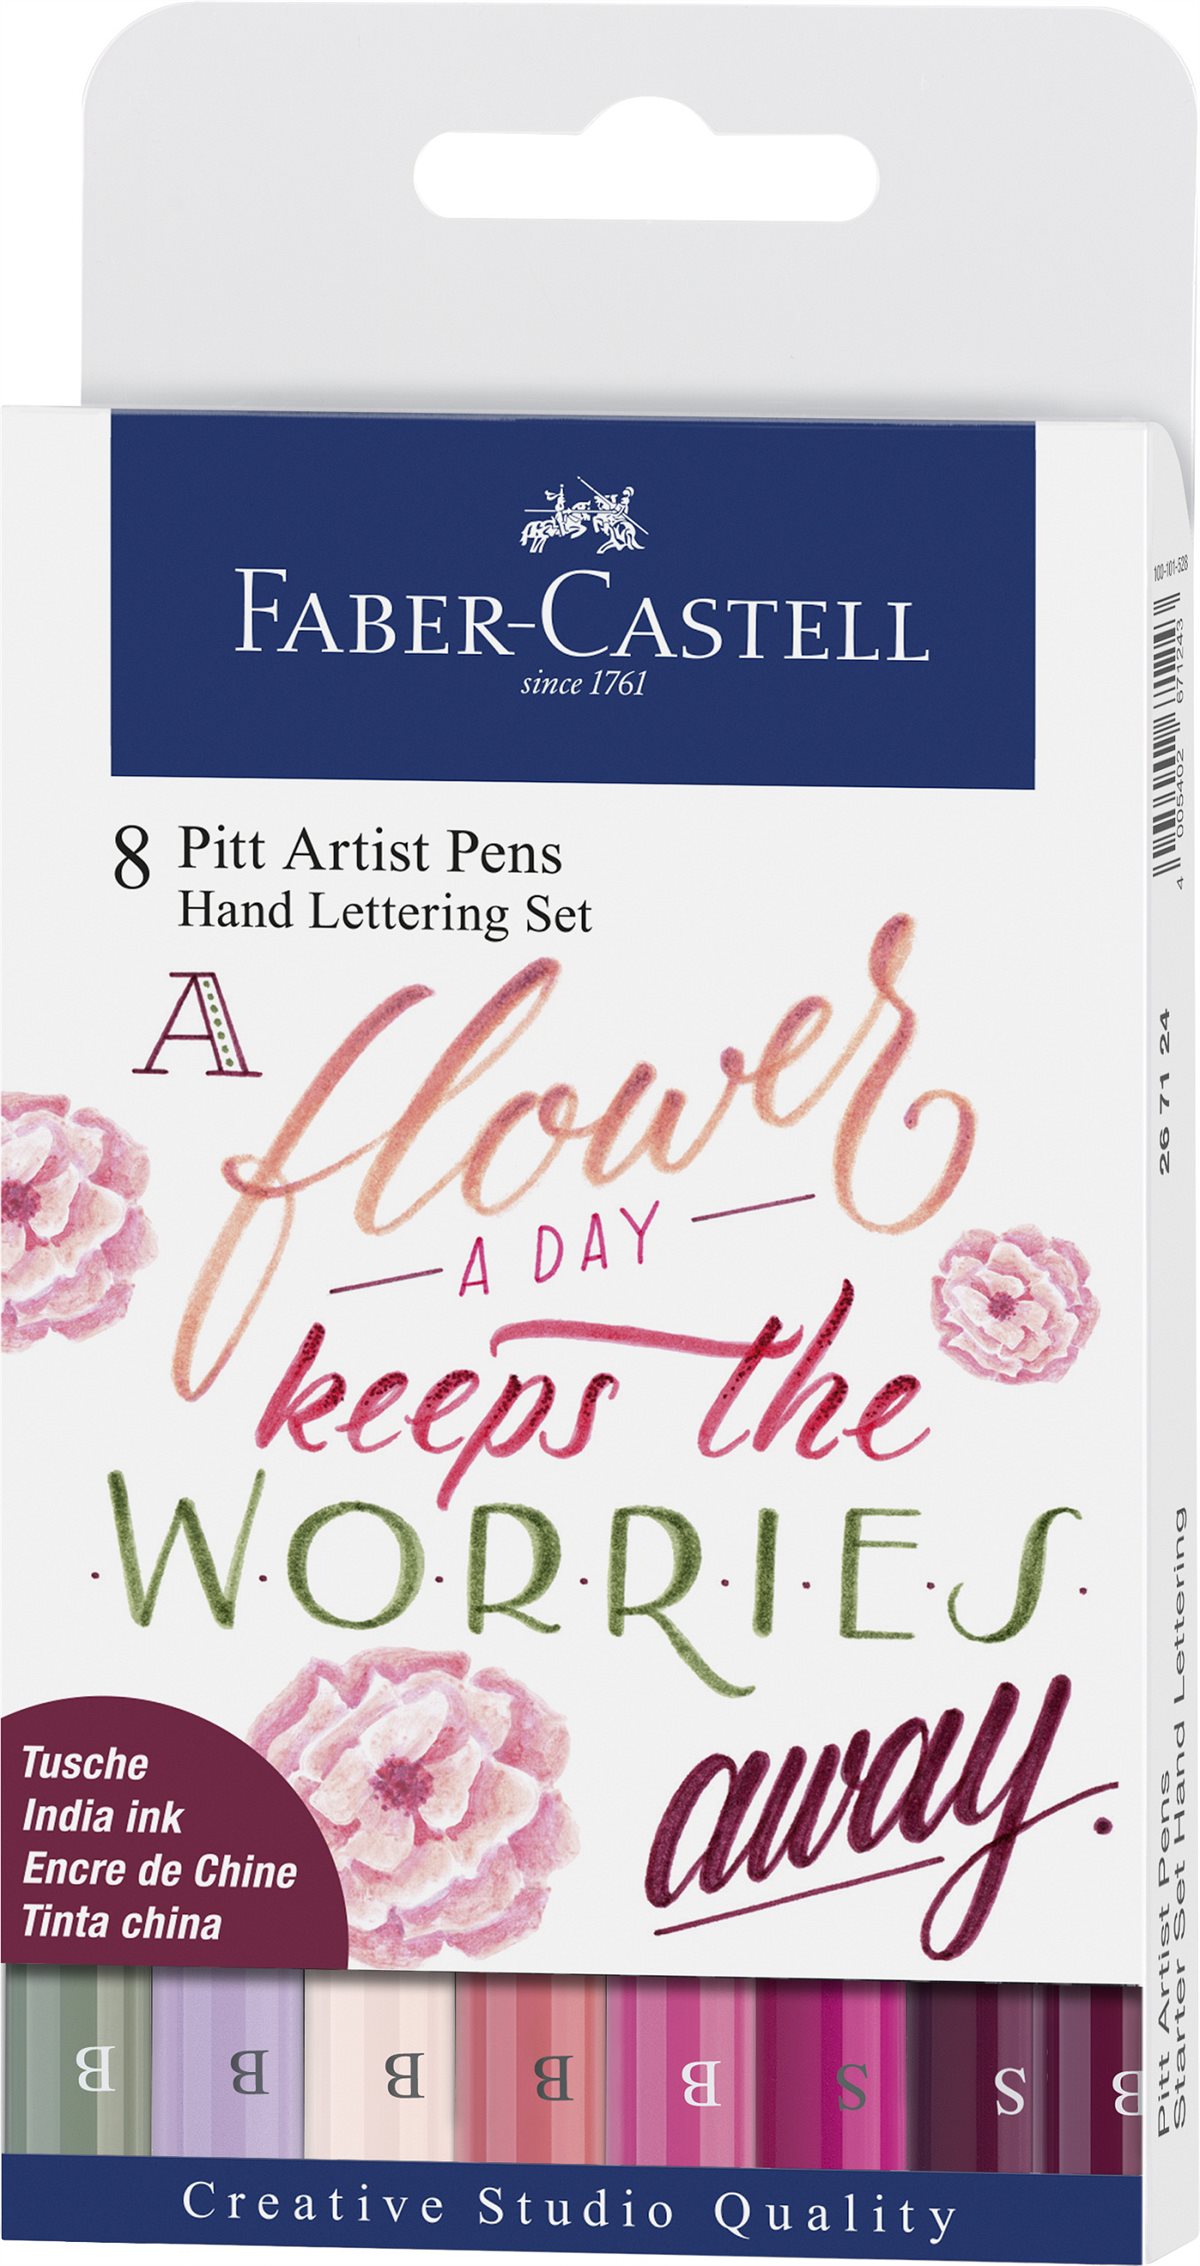 Faber-Castell_Pitt Artist Pen Handlettering Set_EUR 22,- 